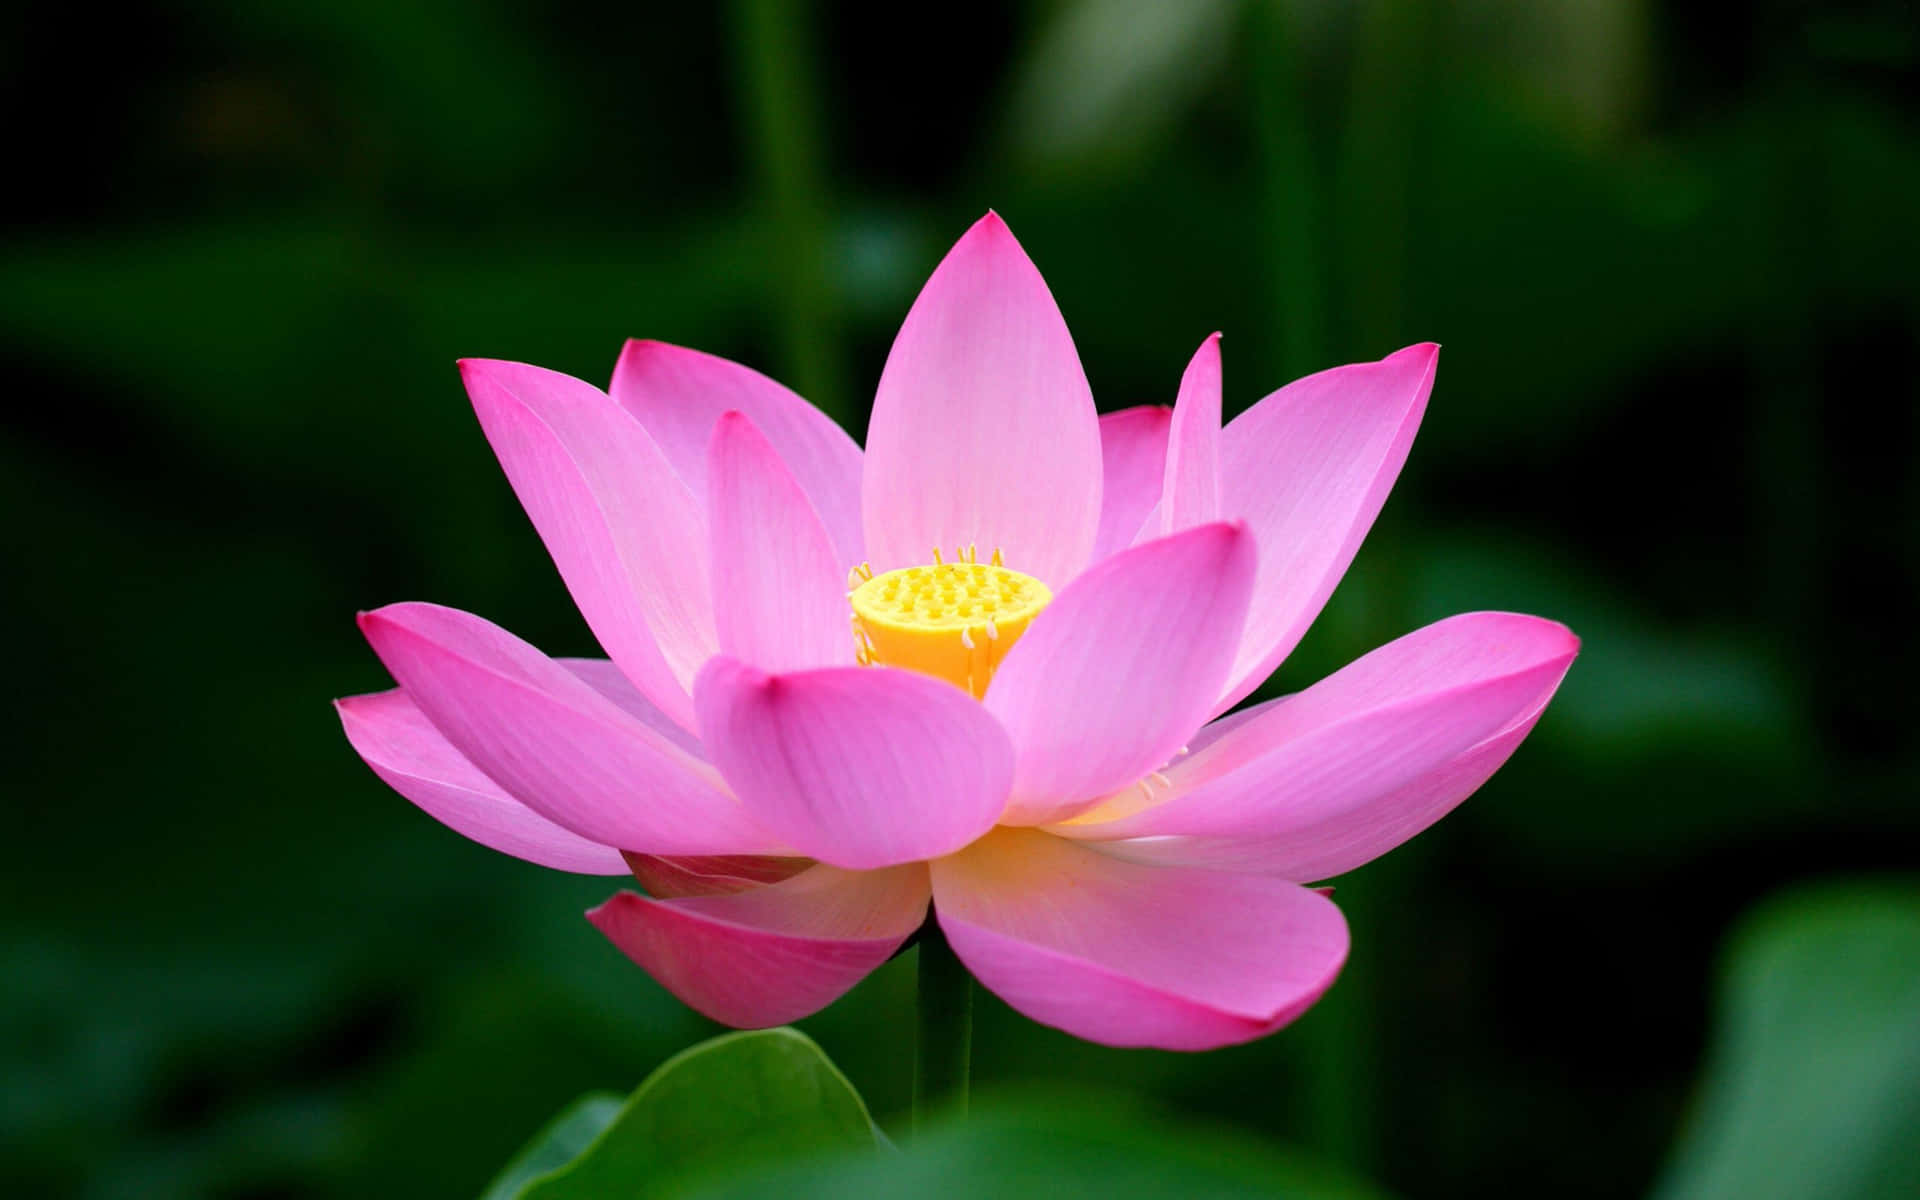 Serene Lotus Blossom In Full Bloom